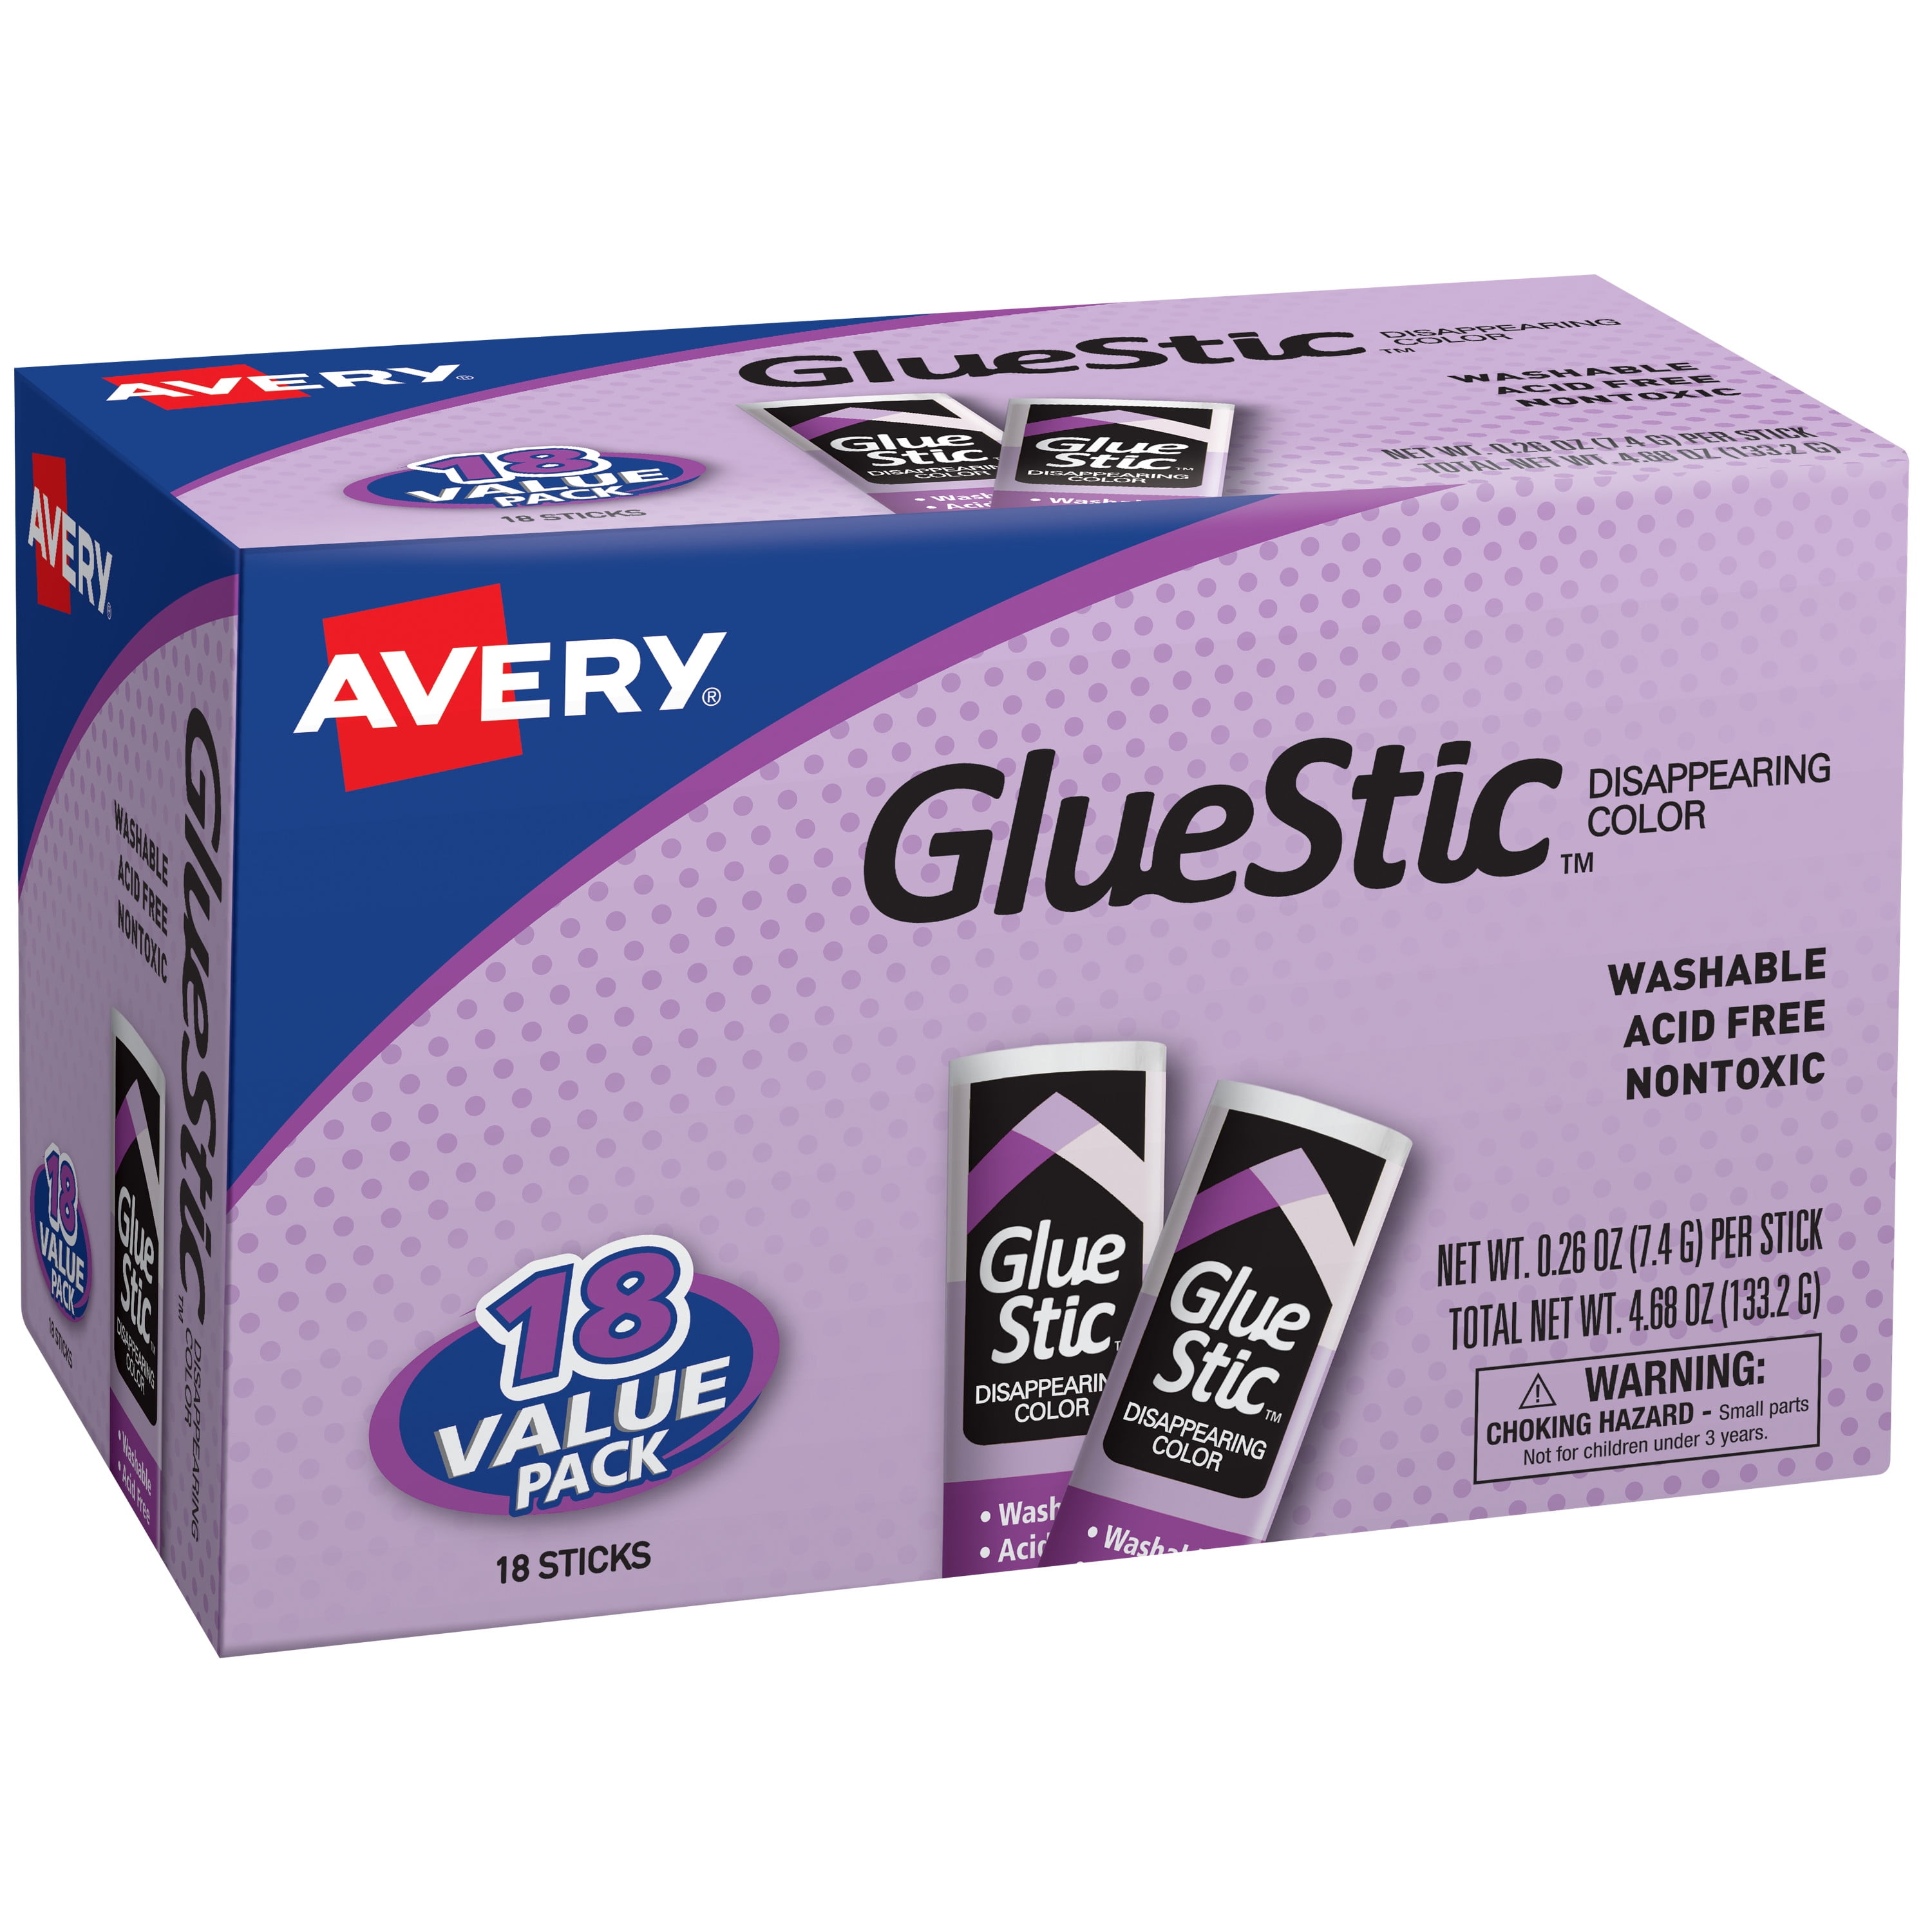 Avery Elle - Liquid Glue Adhesive